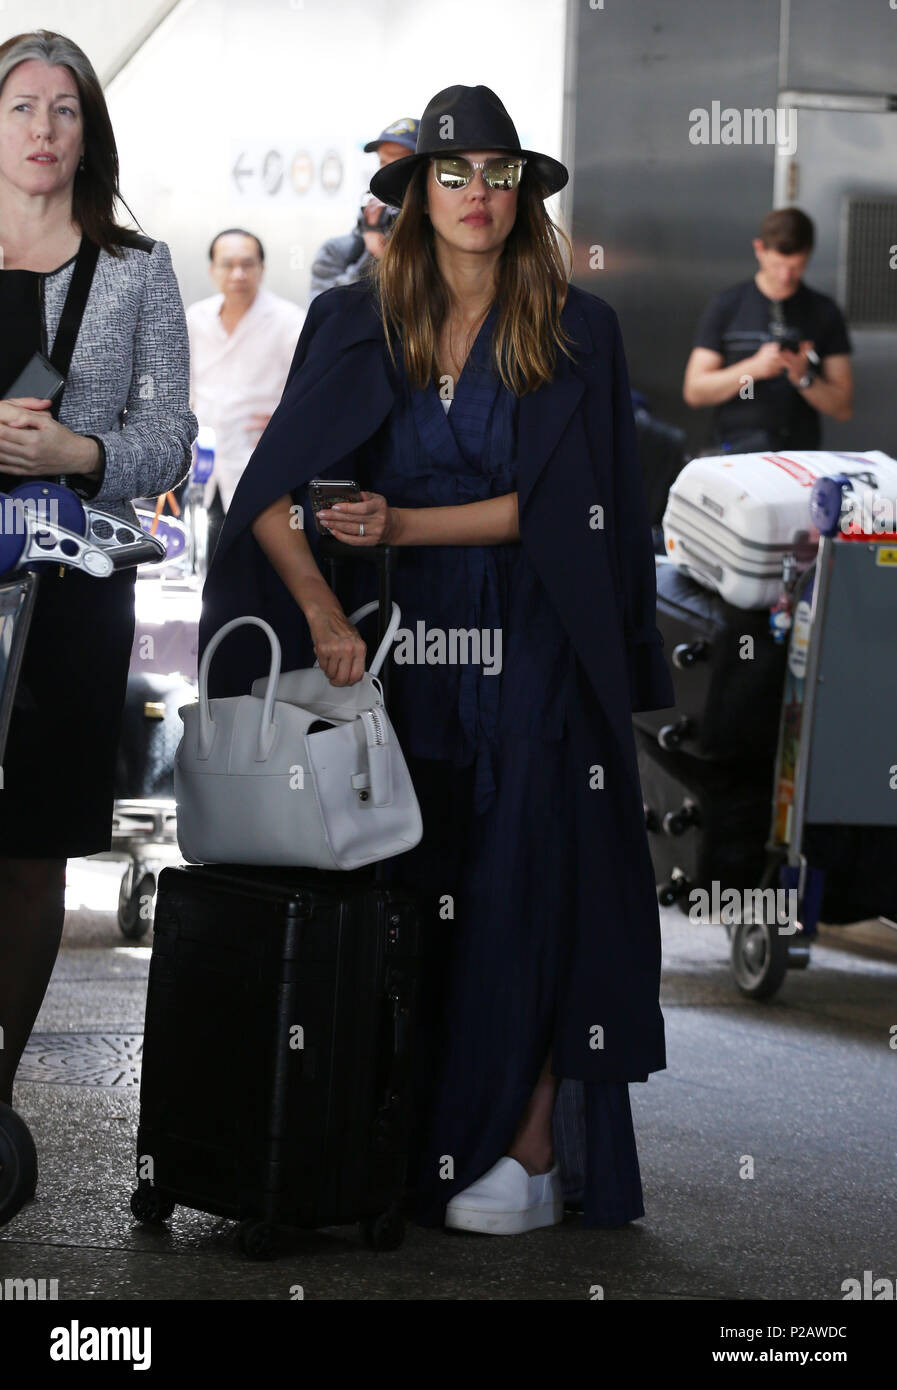 Los Angeles, Ca, USA. 14 Juni, 2018. Jessica Alba siehe at LAX Airport am 14. Juni 2018. Quelle: John Misa/Medien Punch/Alamy leben Nachrichten Stockfoto